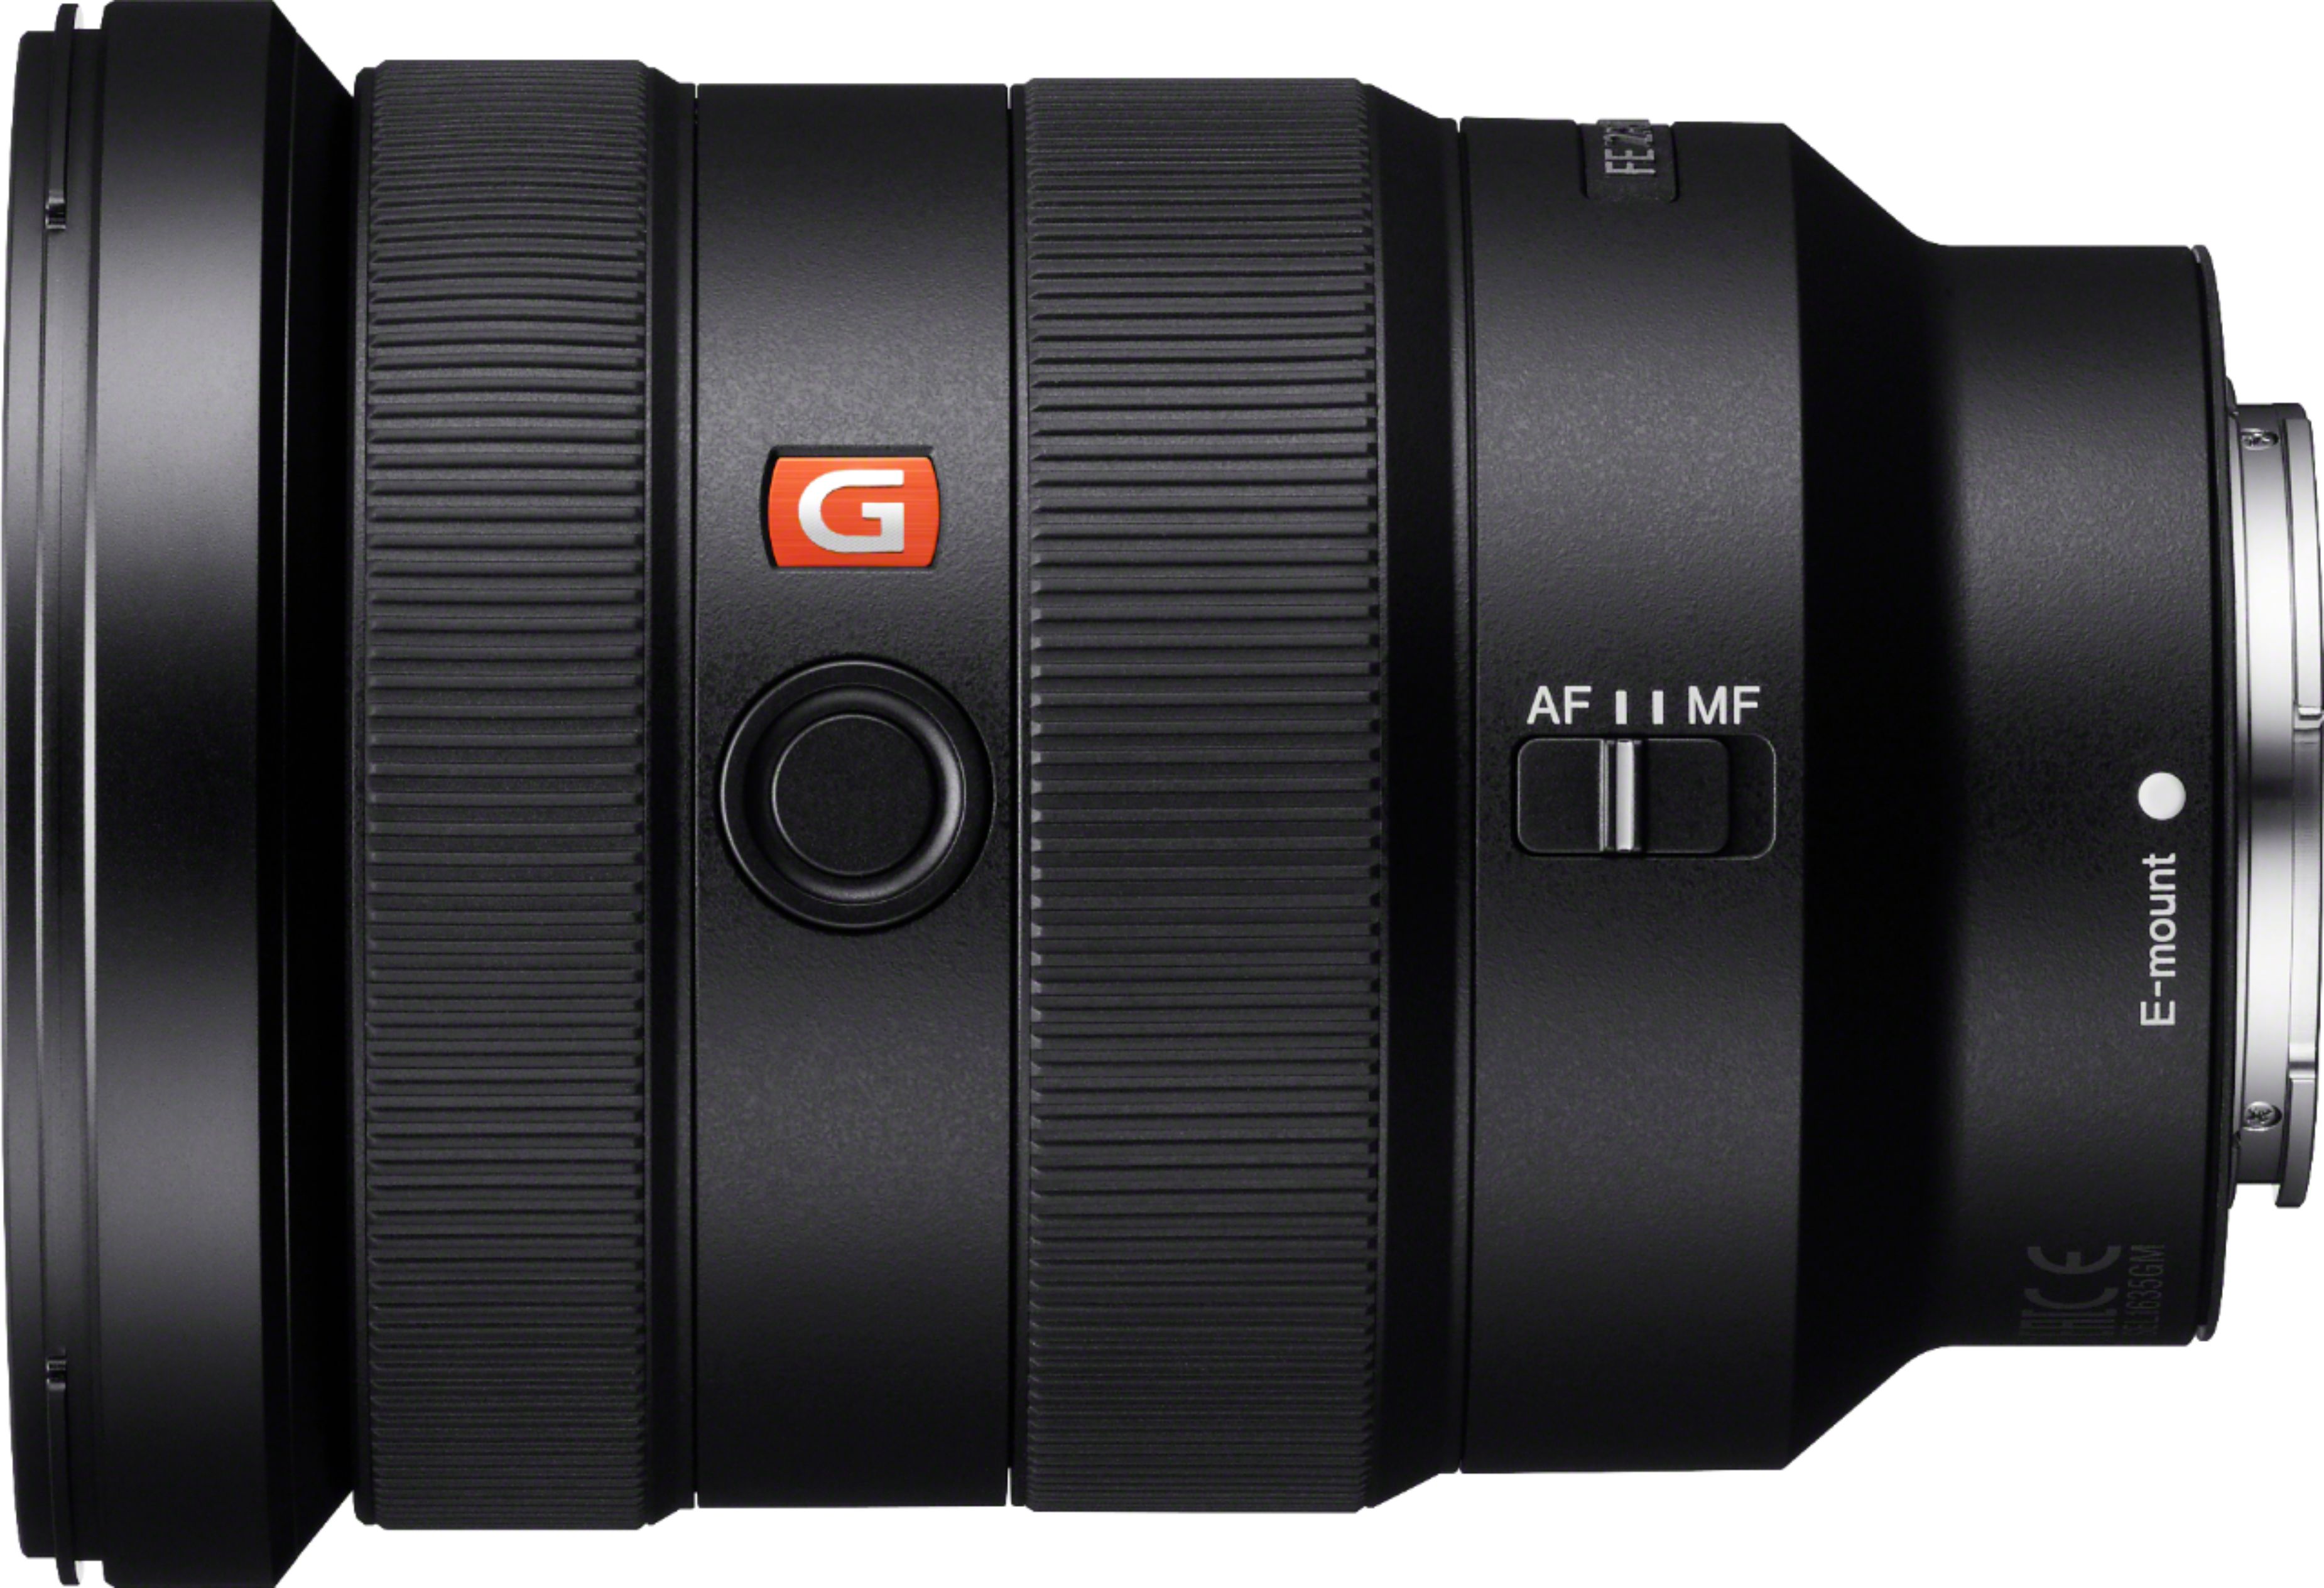 Angle View: Nikon - AF-P DX NIKKOR 10-20mm f/4.5-5.6G VR Wide-Angle Zoom Lens for APS-C F-mount cameras - Black